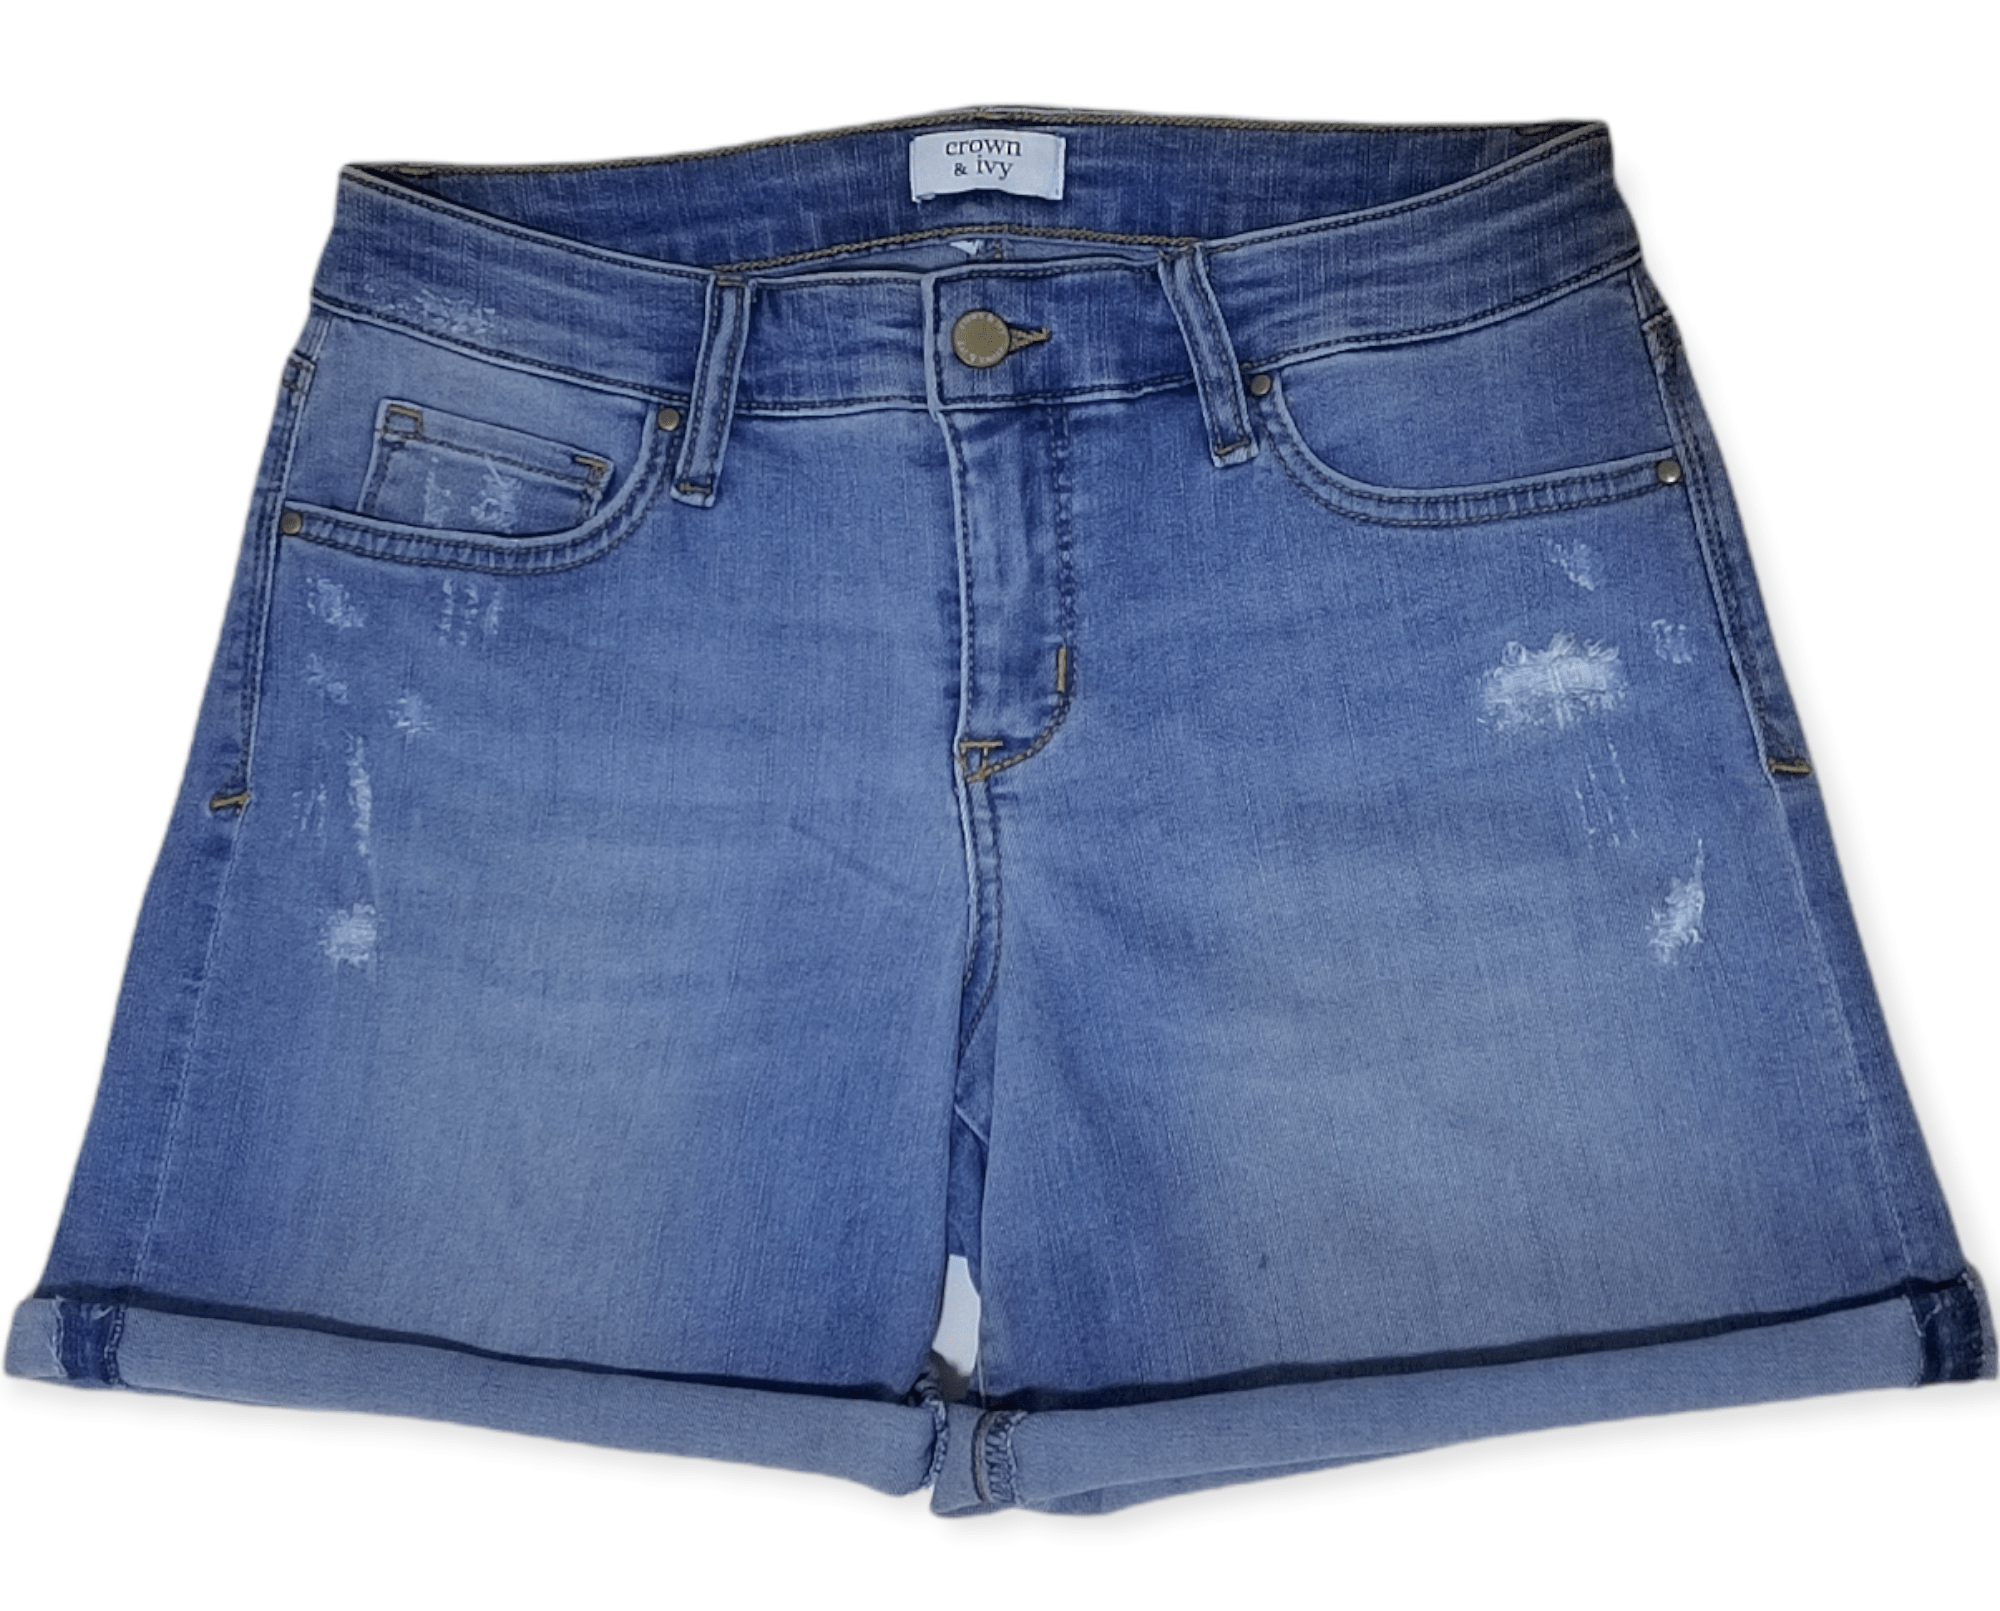 ElOutlet - Summer Women Women Shorts Women Shorts - Jeans Blue